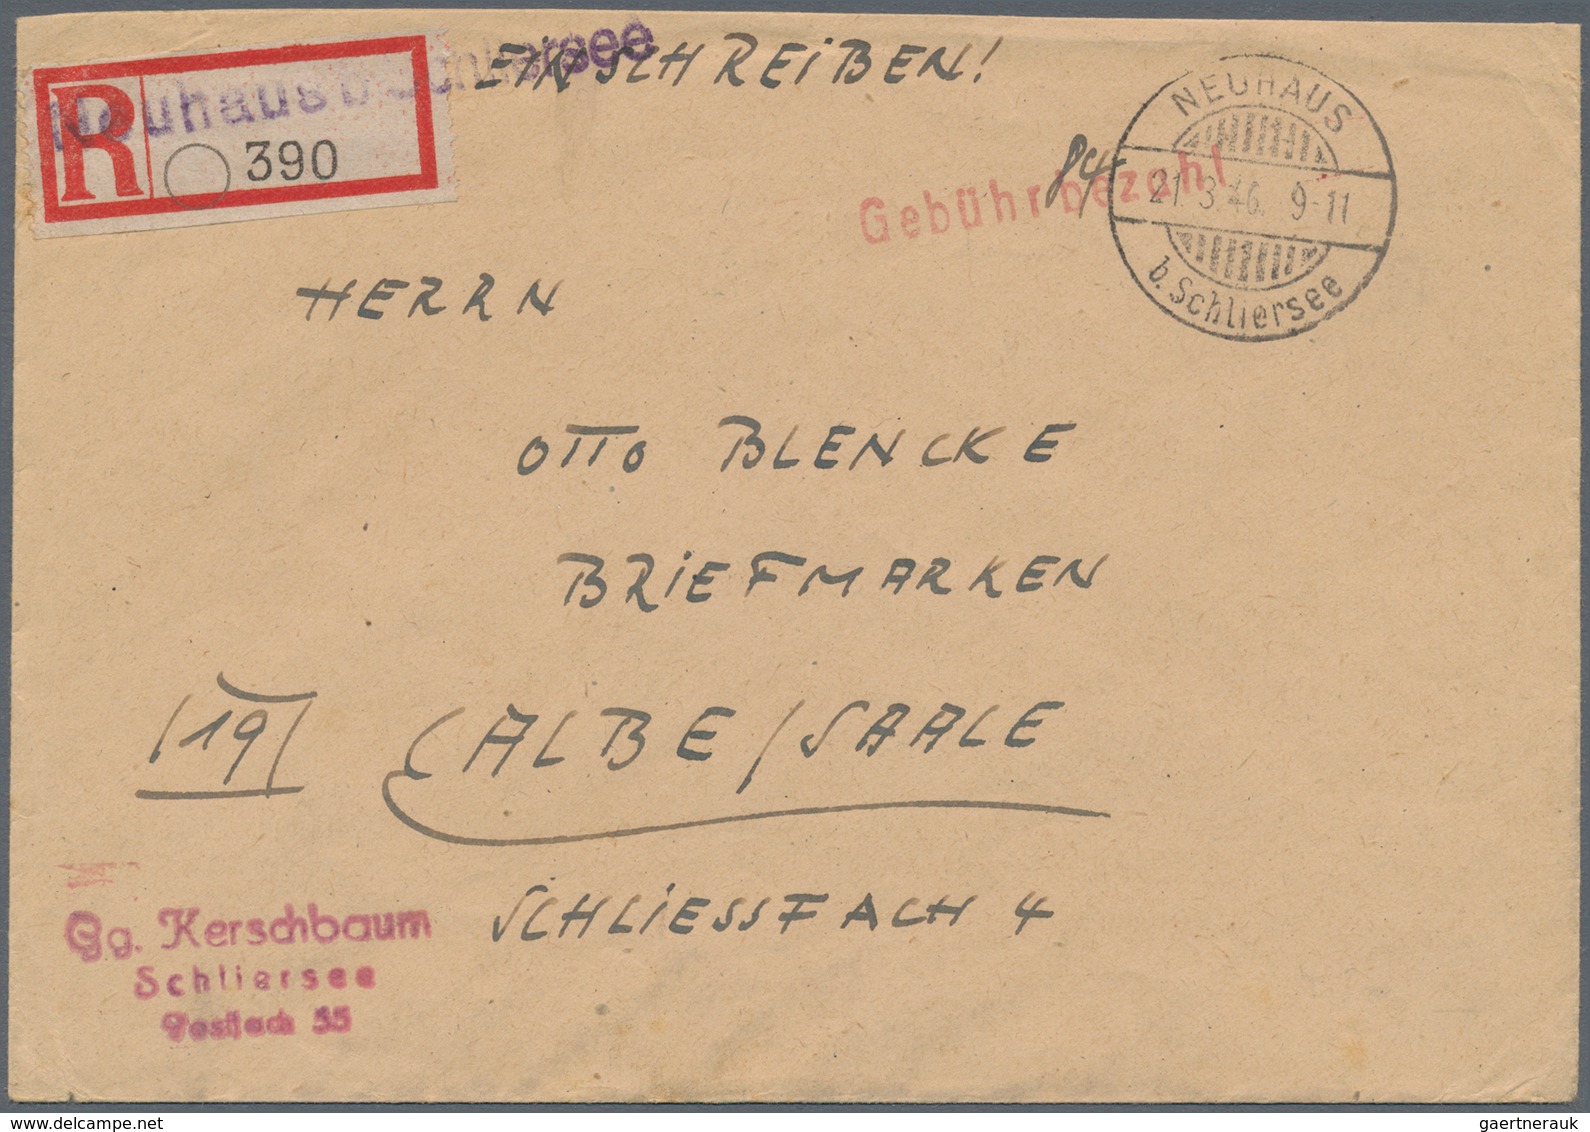 Alliierte Besetzung - Gebühr Bezahlt: 1945/1946, Bayern/Schwaben Plz 13b, saubere Partie von ca. 135